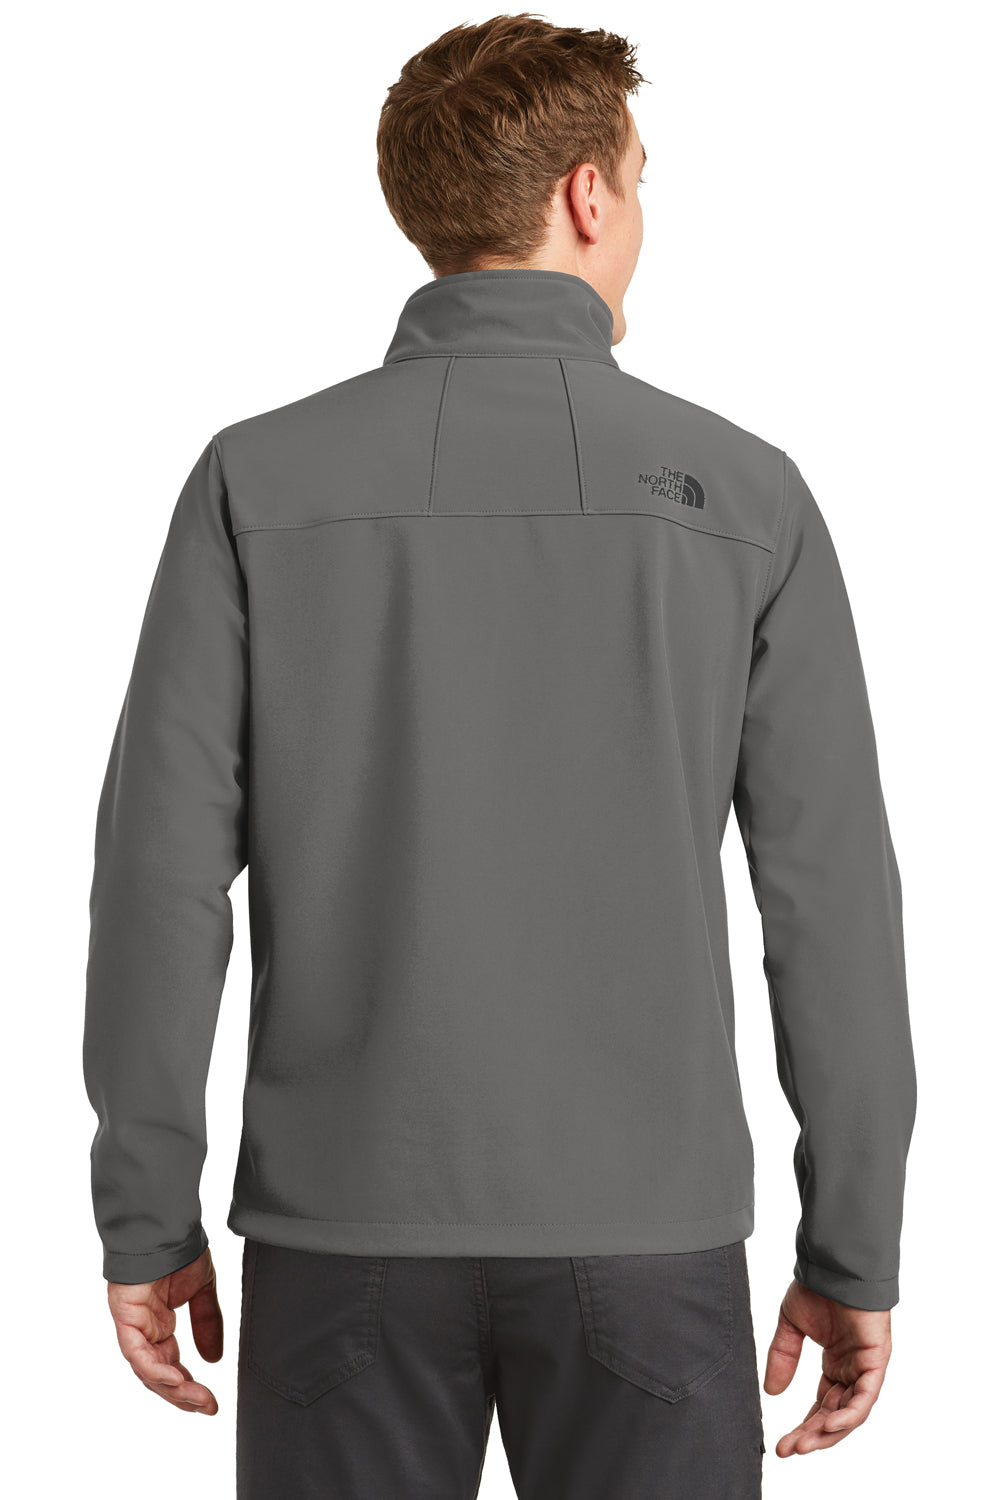 The North Face NF0A3LGT Mens Apex Barrier Wind & Resistant Full Zip Jacket Asphalt Grey Back